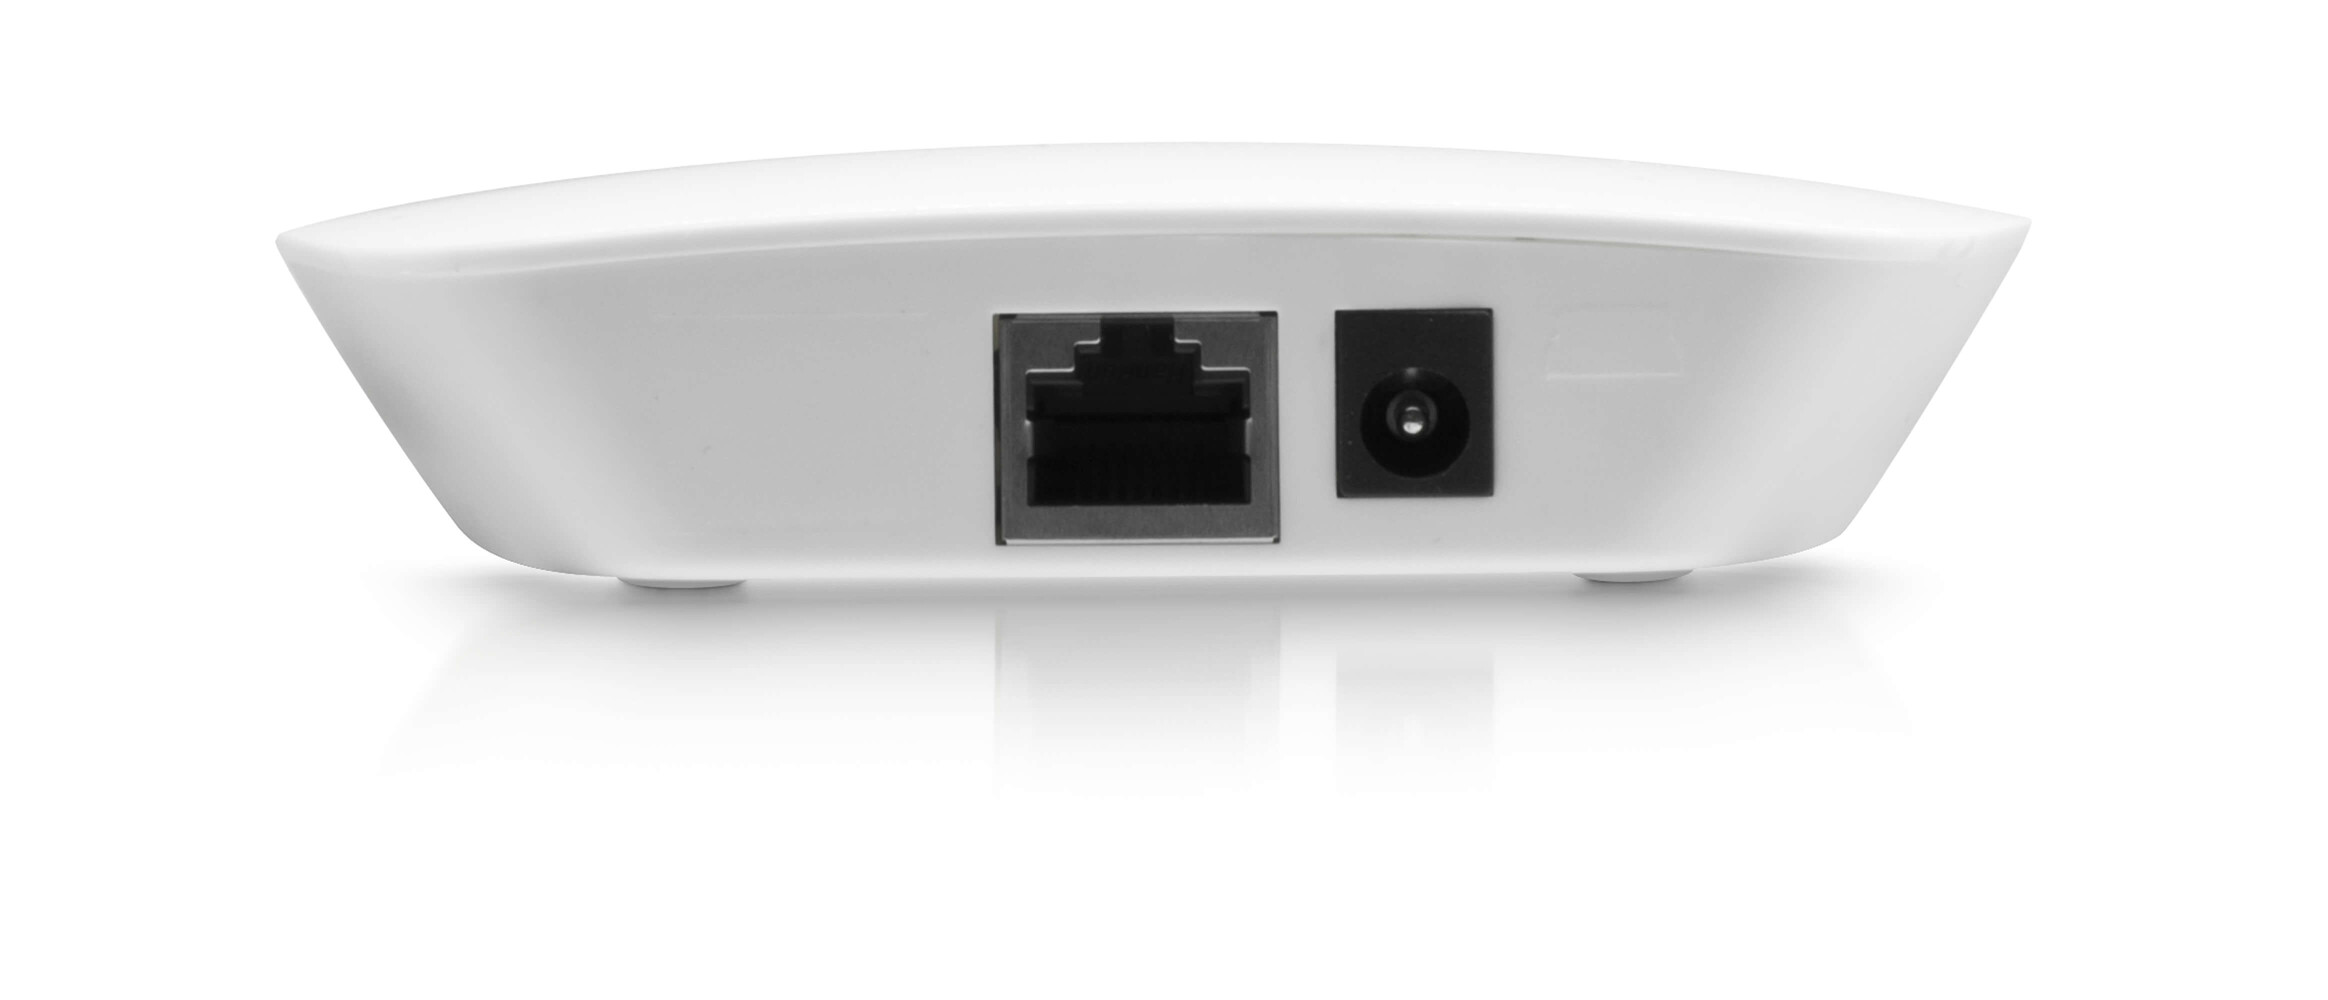 LED Universum Smart Home ZigBee Gateway von LED Universum - innovatives, benutzerfreundliches Smarthome-System